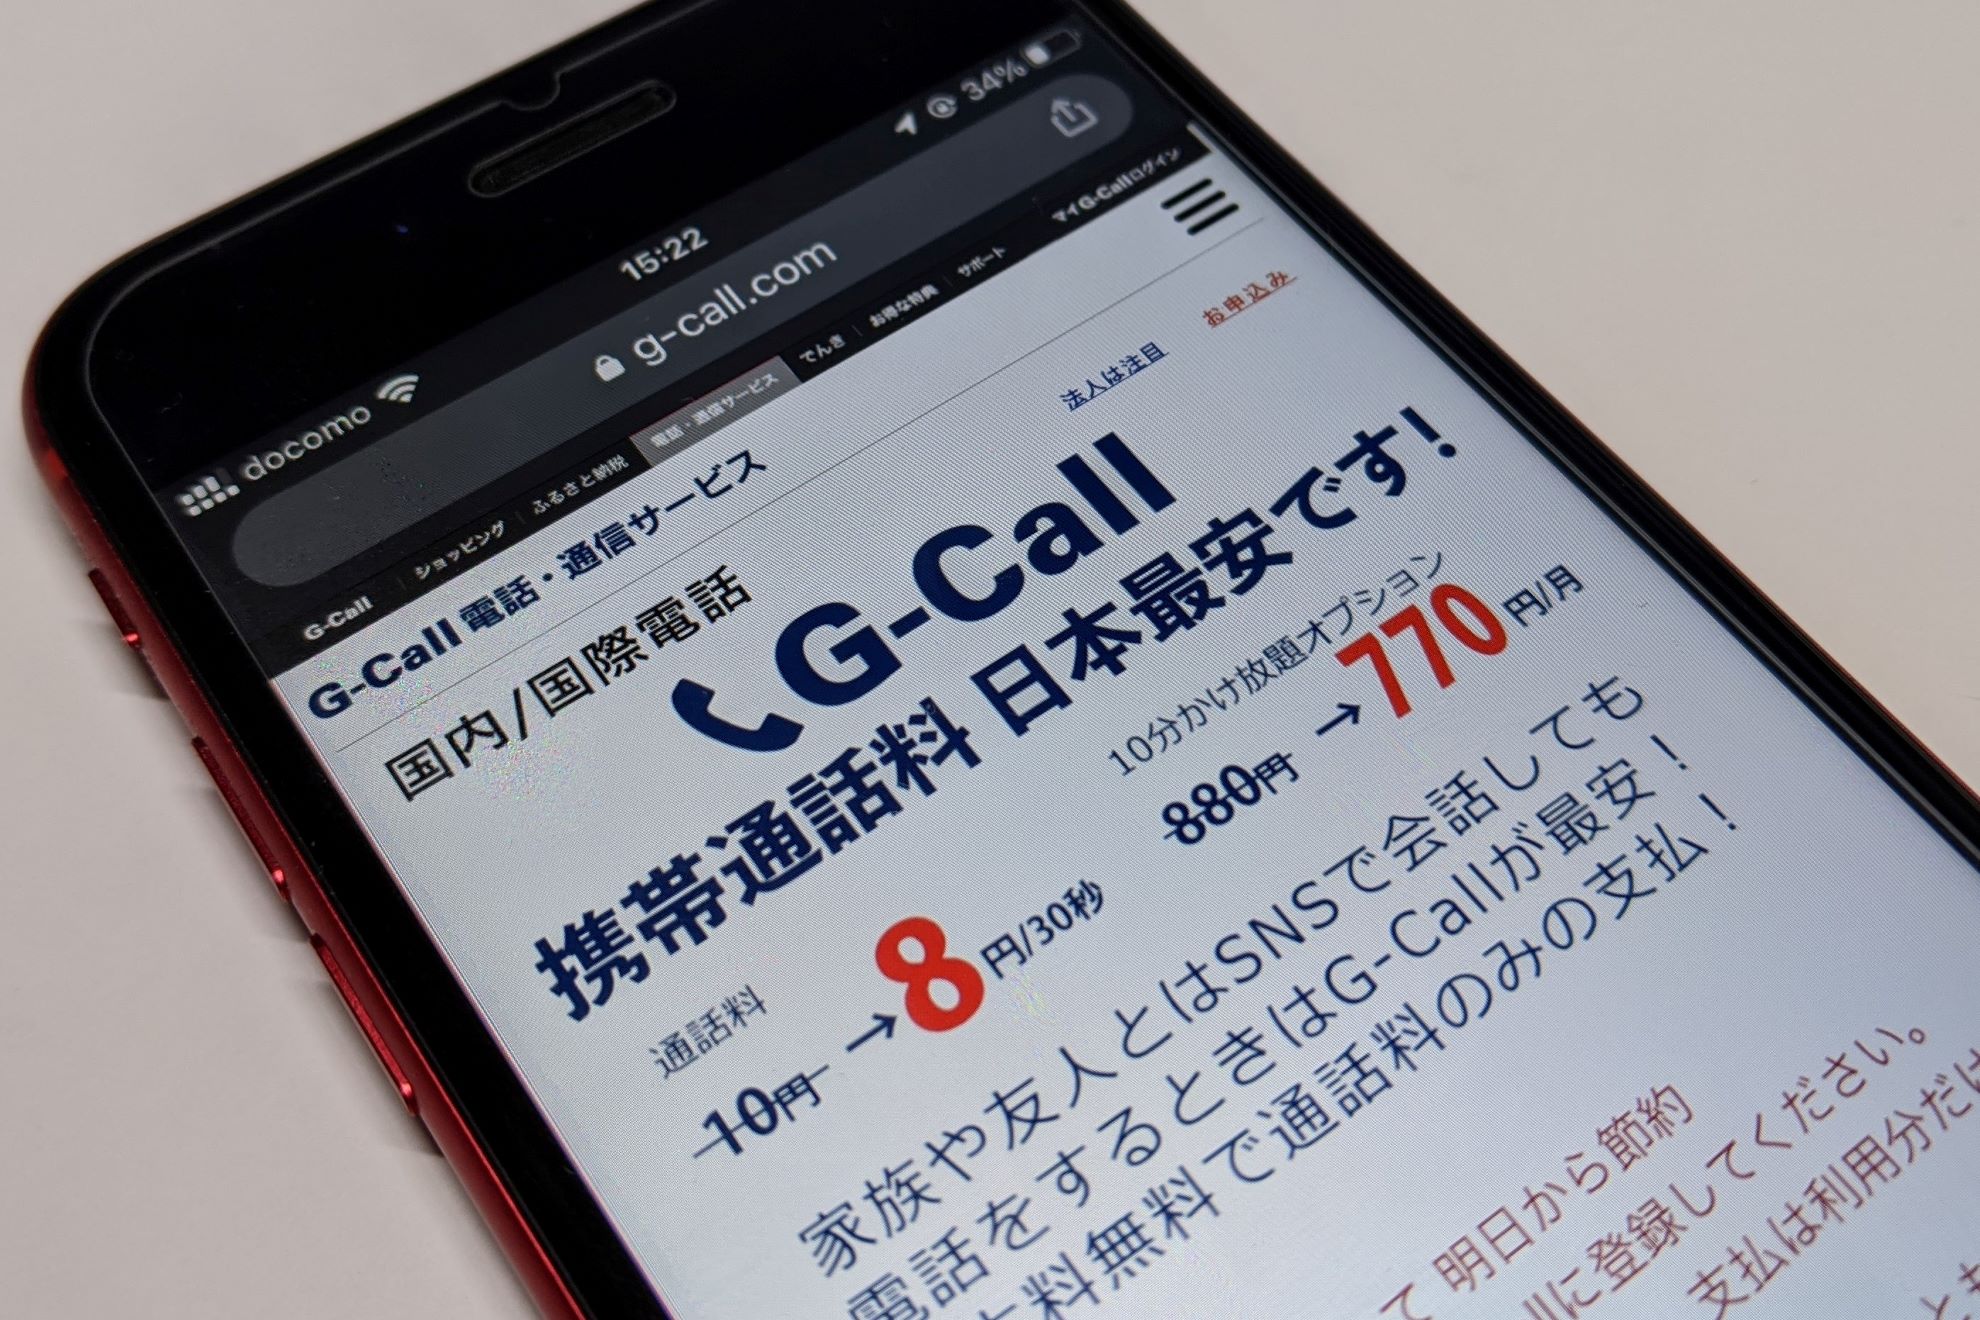 日本で一番安い 通話料が30秒8円の G Call に迫る ケータイ Watch Sponsored